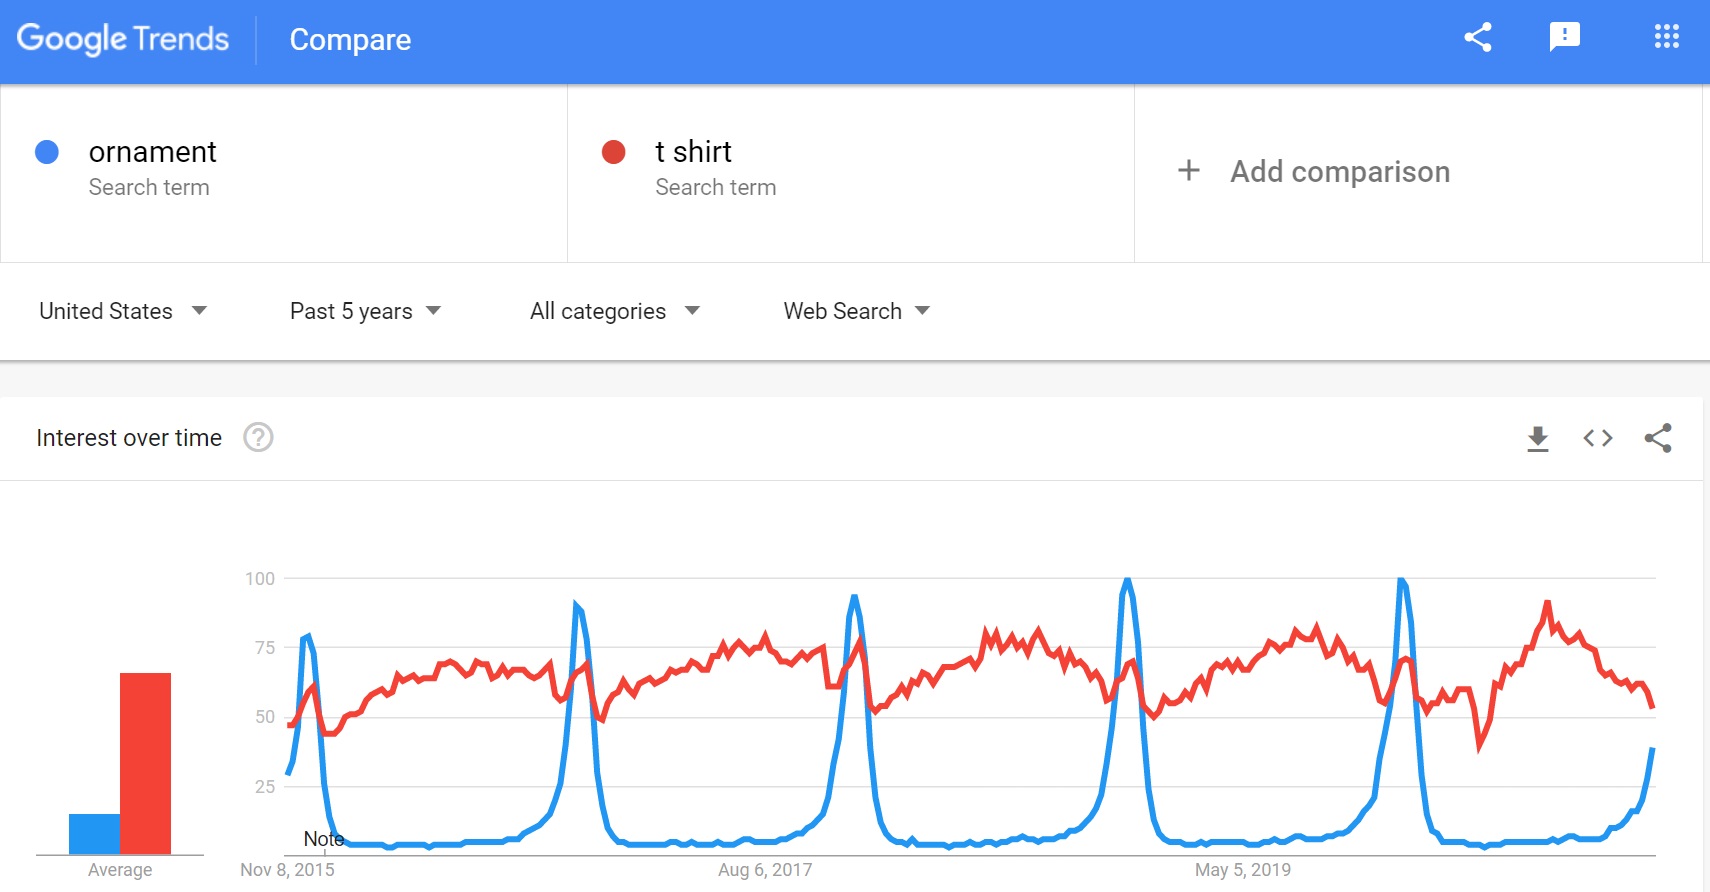 Kết quả Google Trends khi so sánh từ khóa “ornament” và “t shirt”